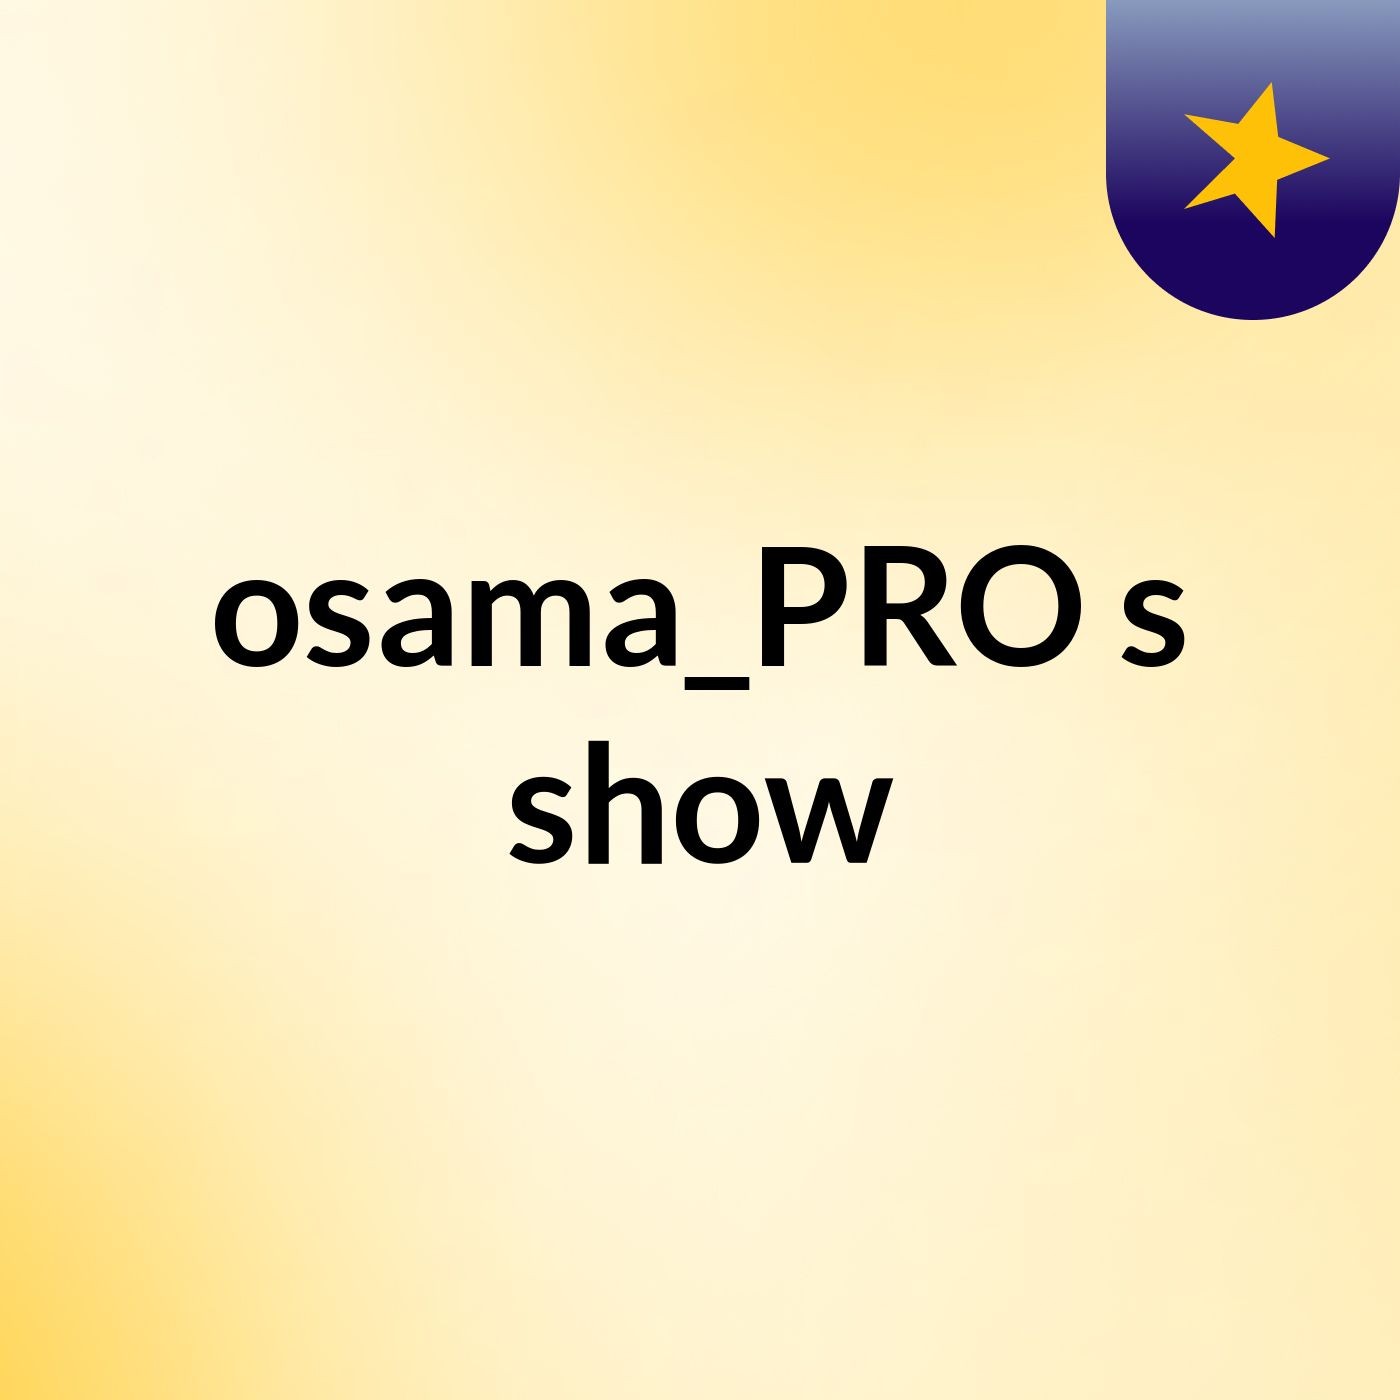 osama_PRO's show